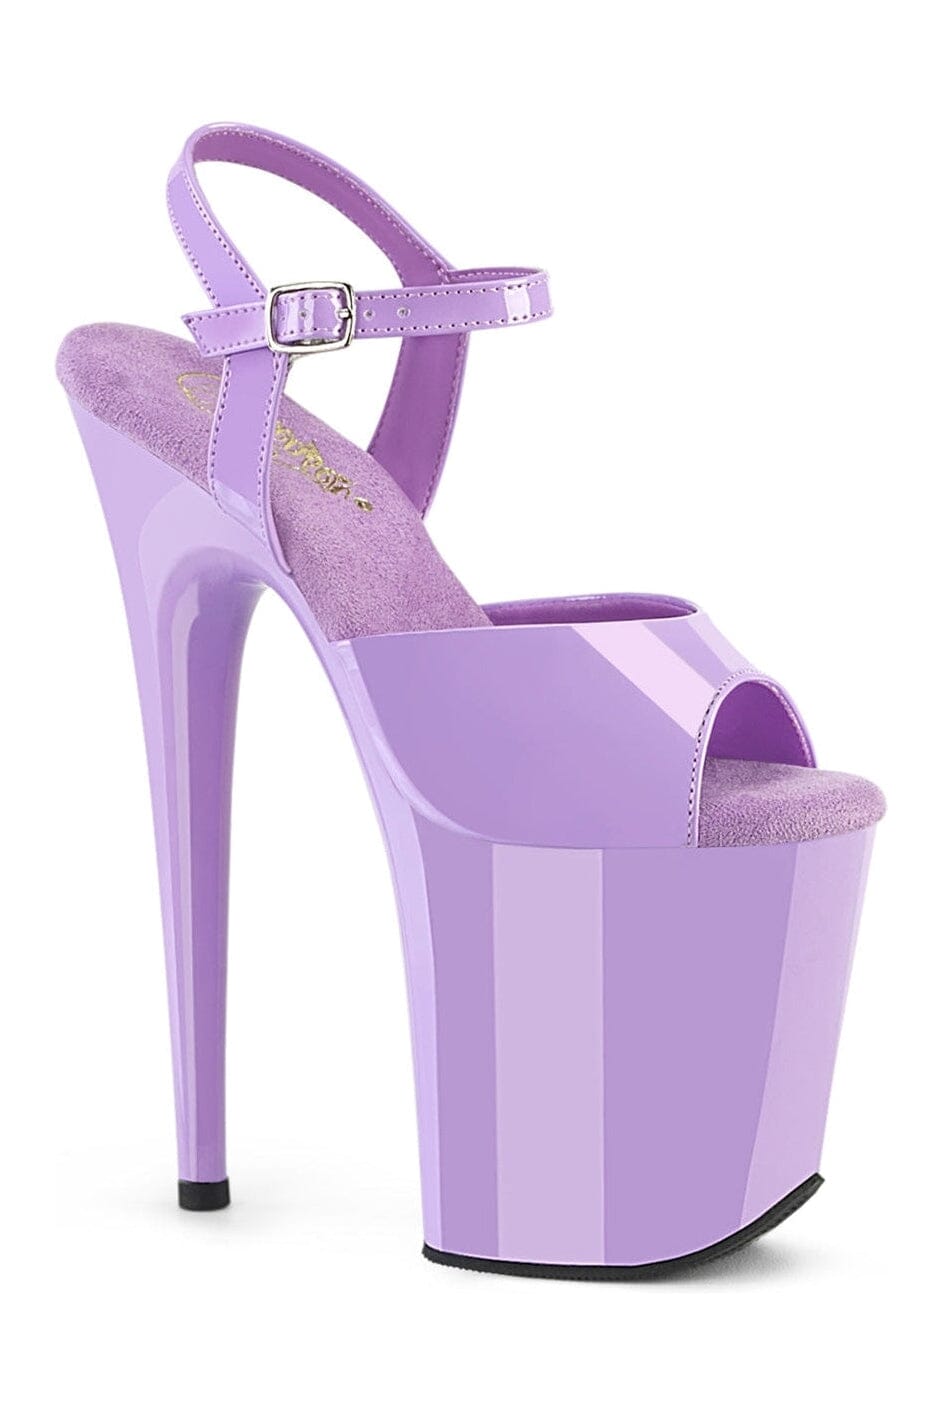 FLAMINGO-809 Purple Patent Sandal-Sandals-Pleaser-Purple-10-Patent-SEXYSHOES.COM